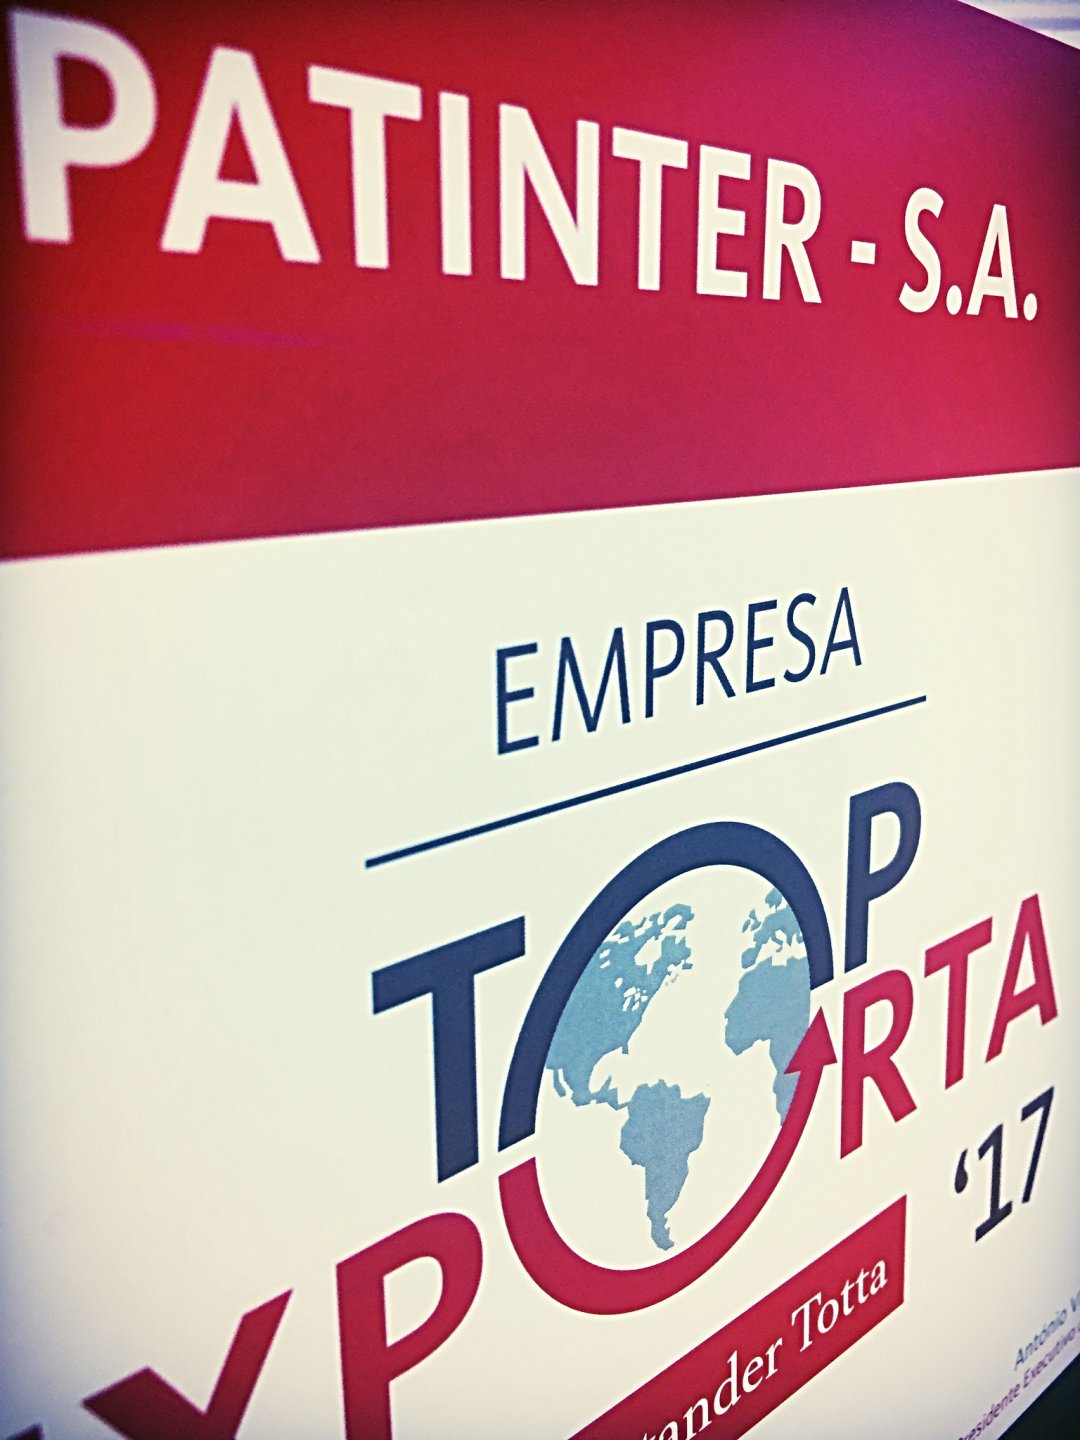 Patinter distinguida como "TOP EXPORTA"